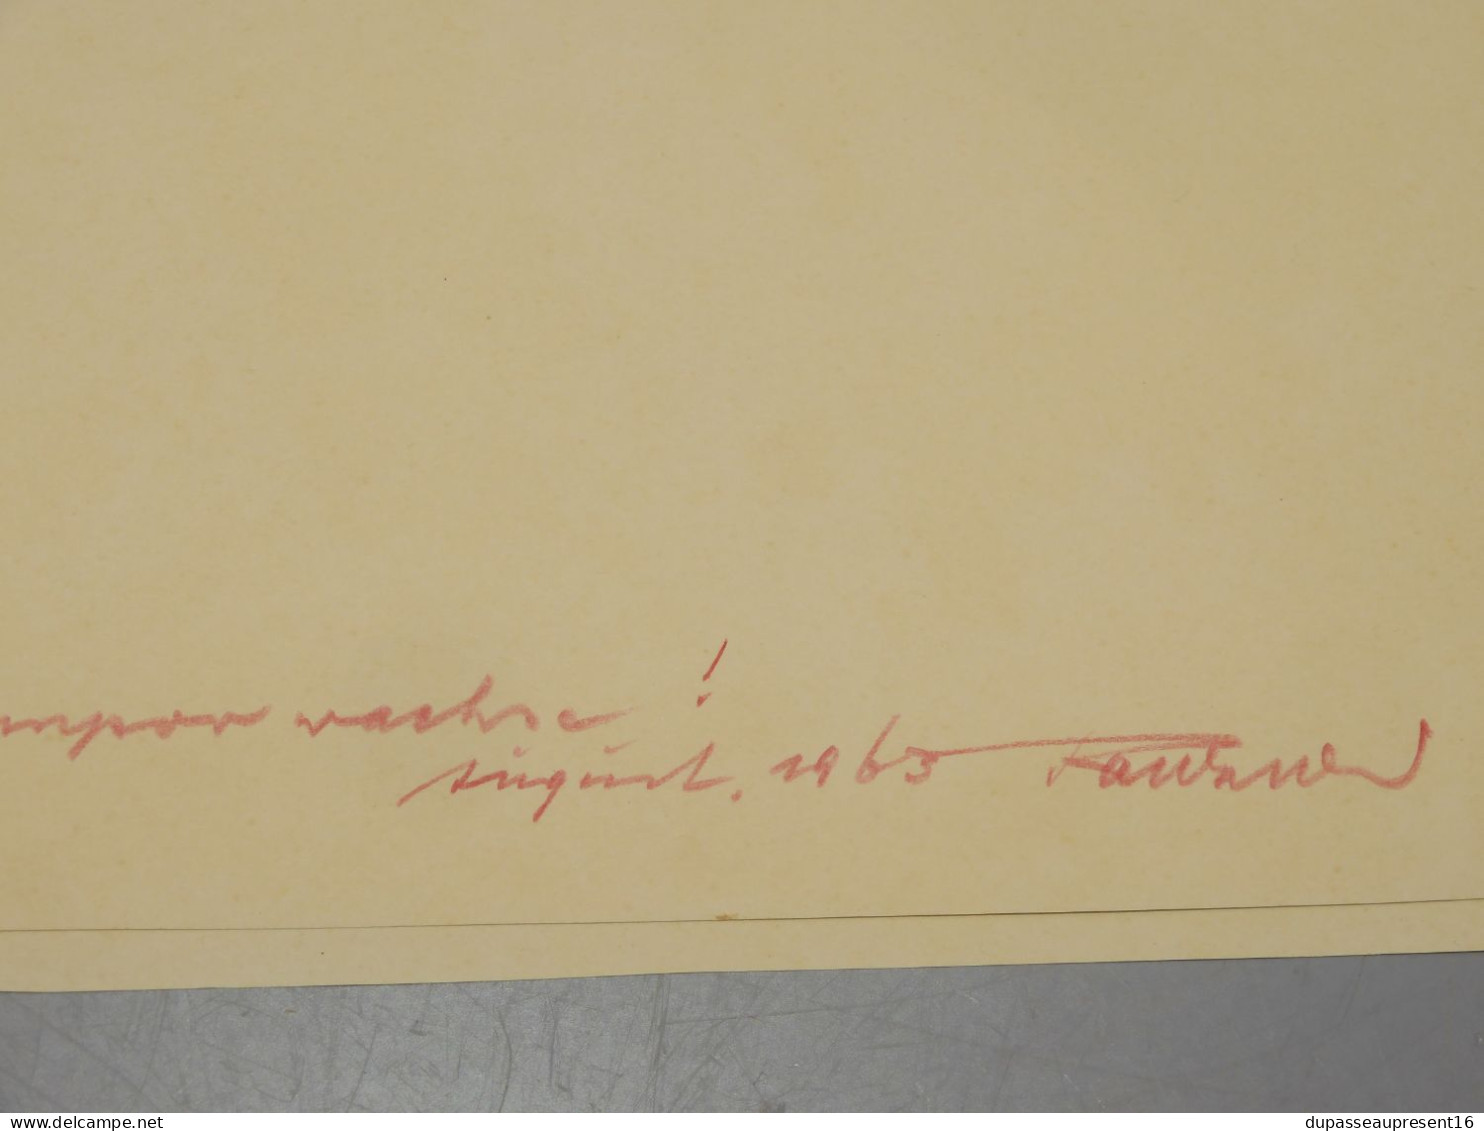 -DESSIN CRAYON PASTELS 1963 signé au crayon sur MARQUISE RANKNE? POST CUBISME   E